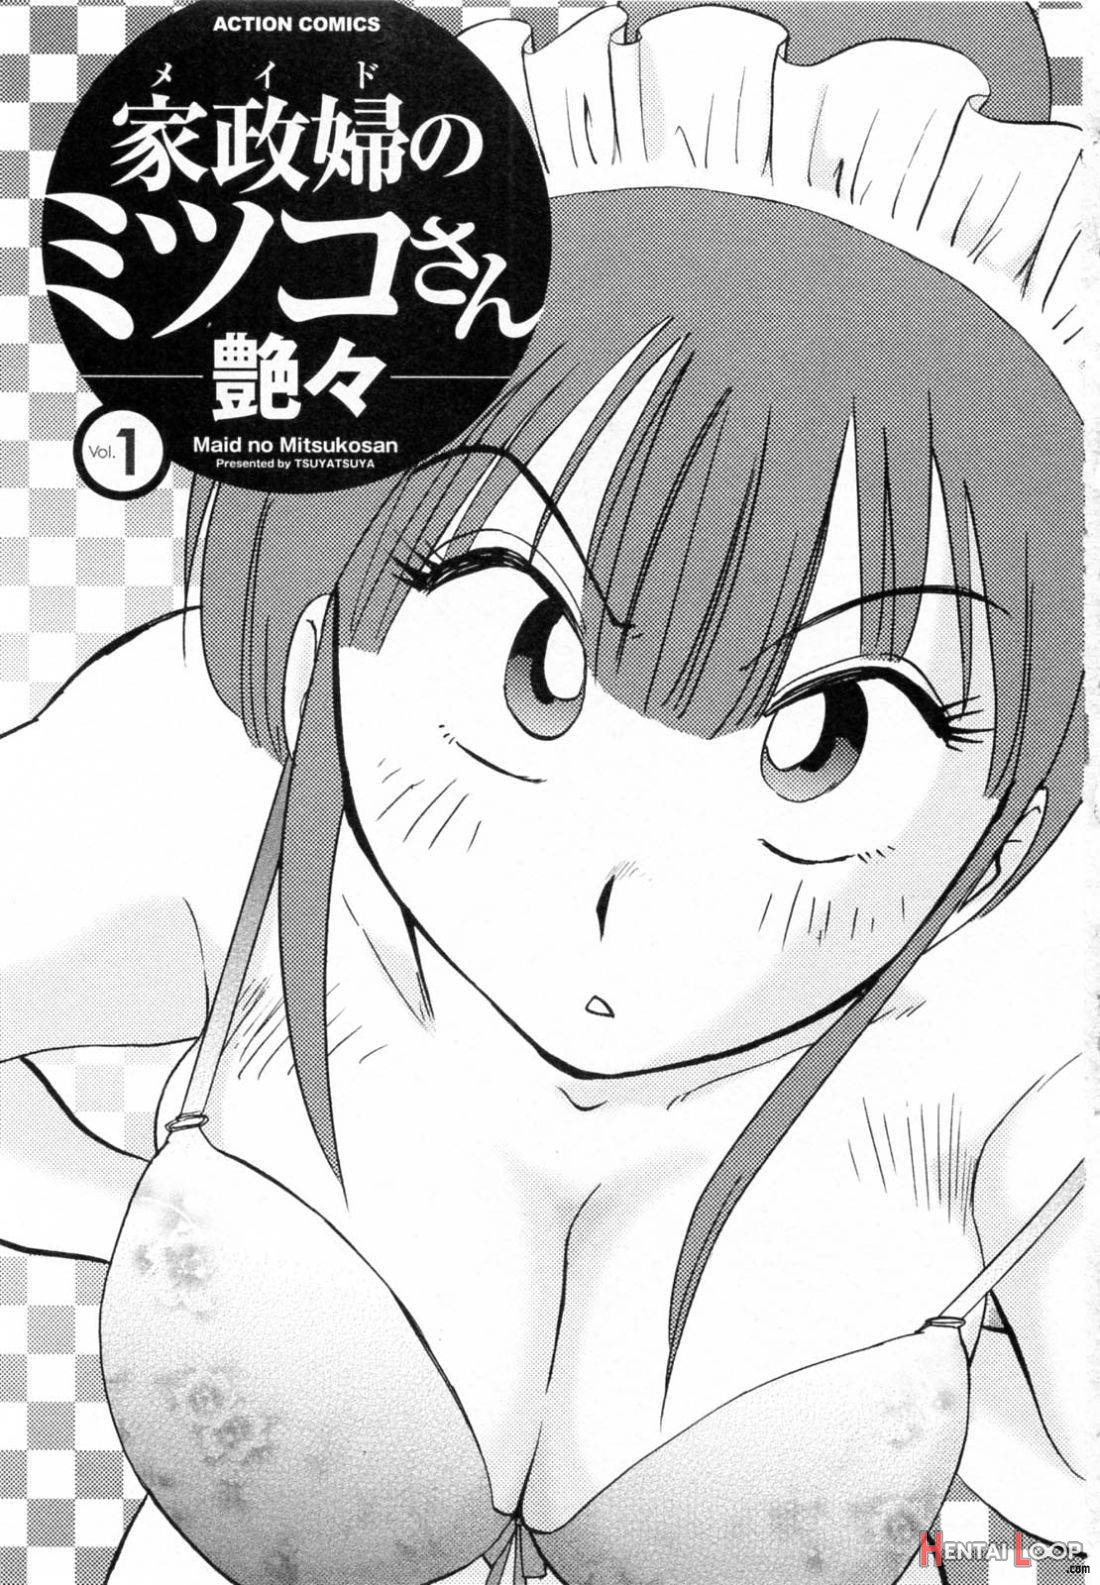 Maid No Mitsuko-san 1 page 2